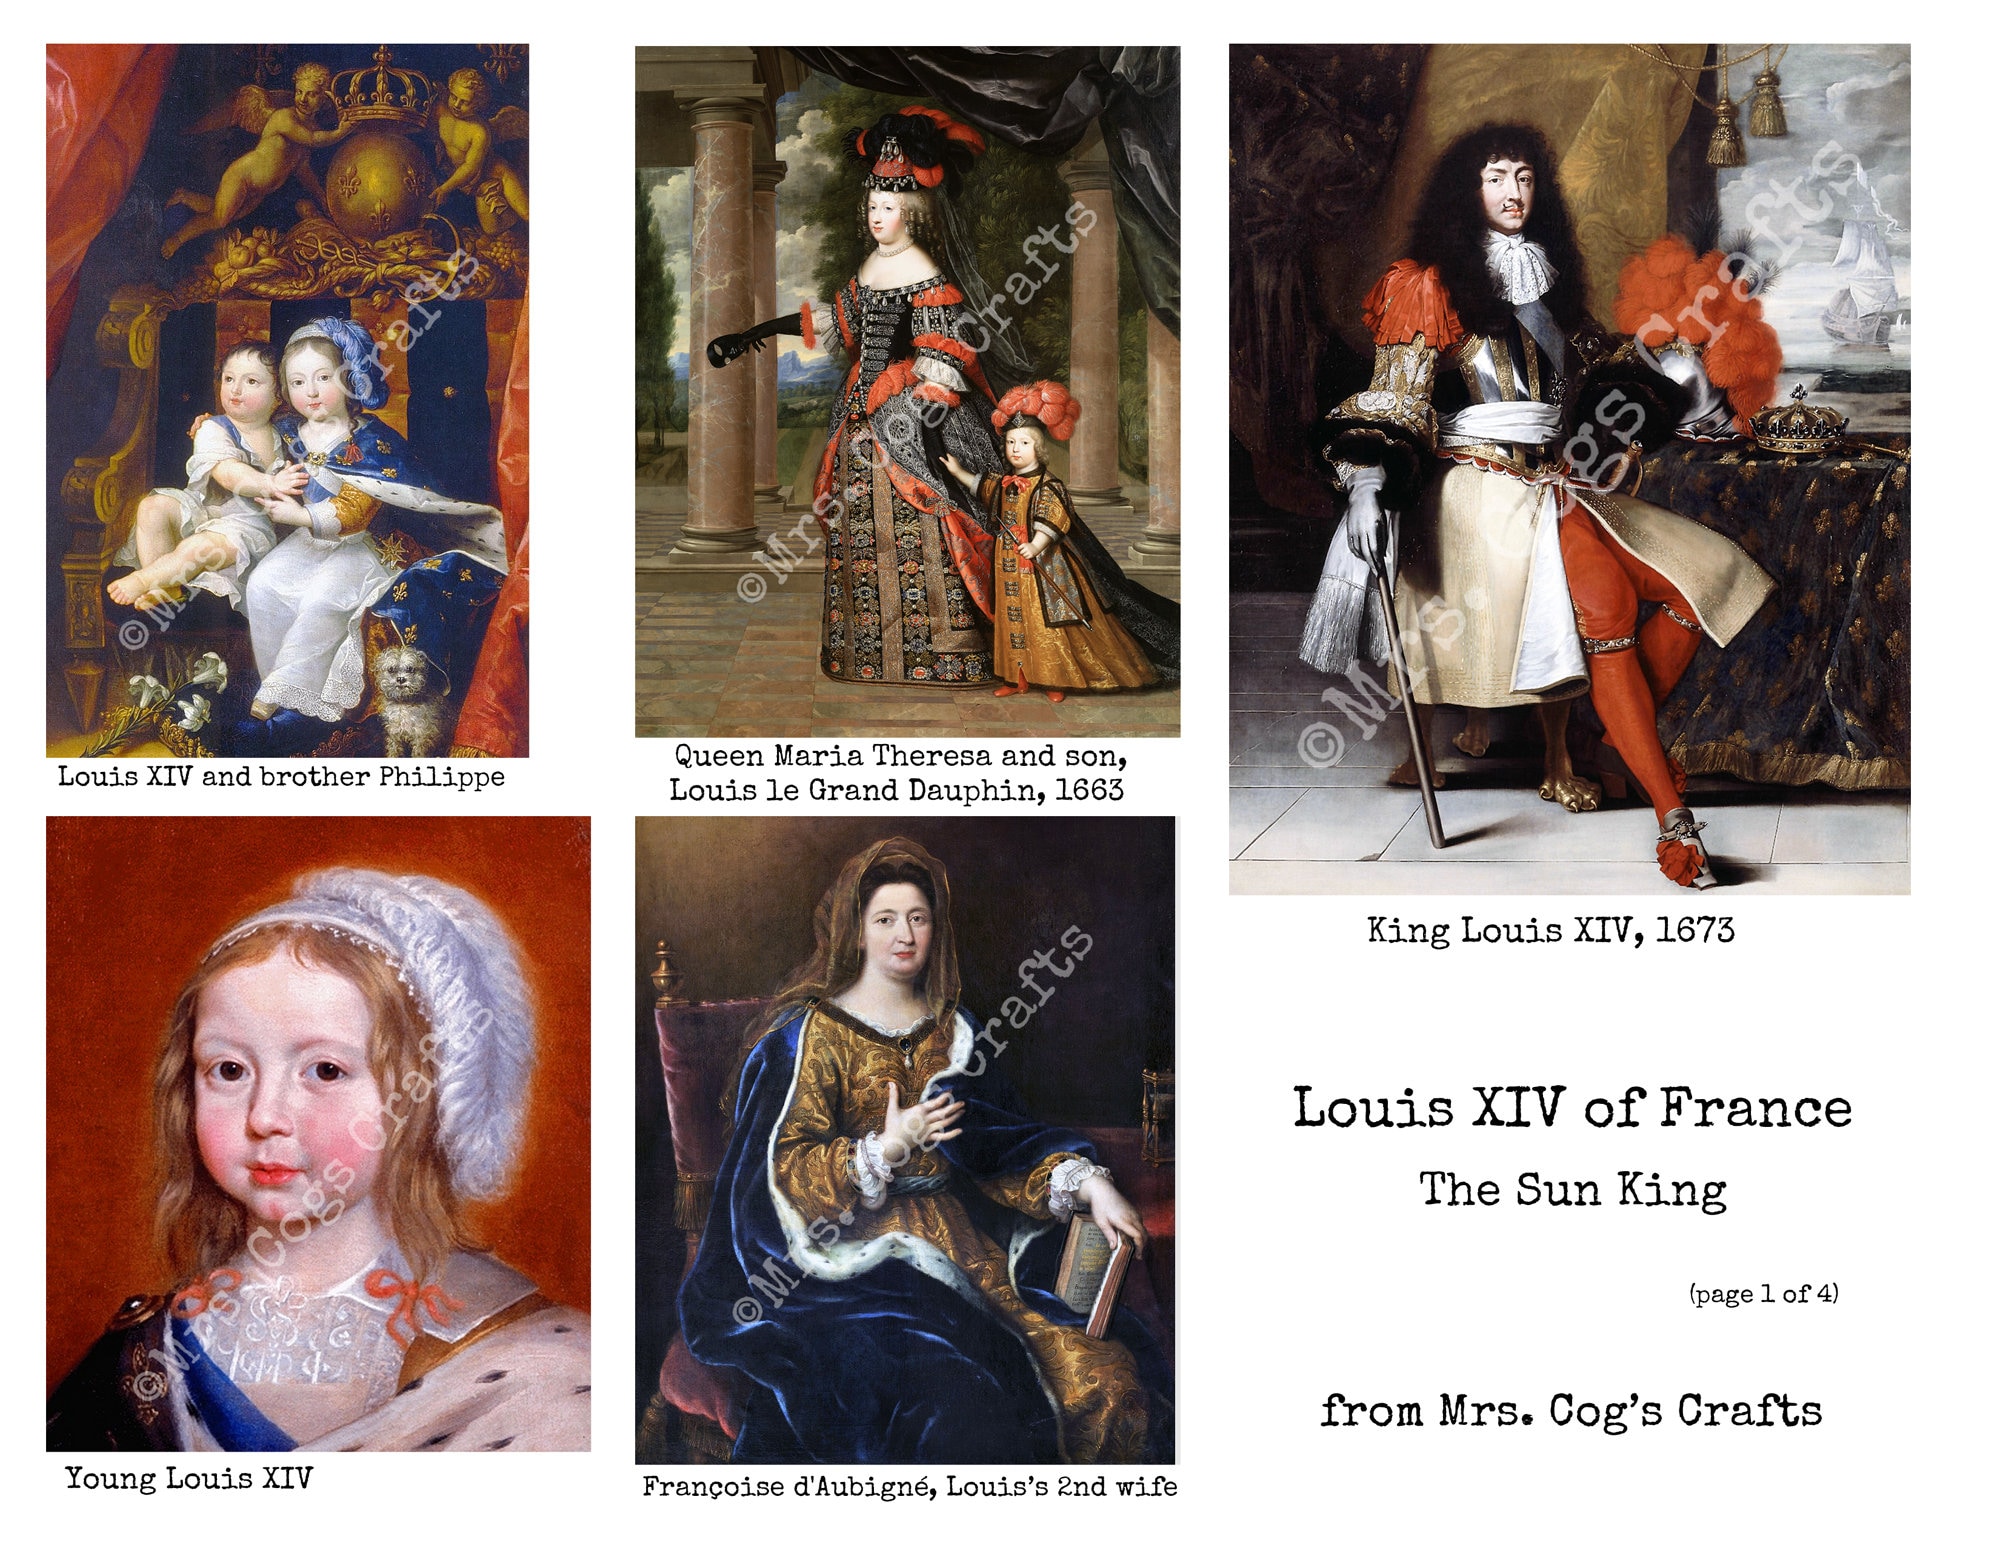 Le roi soleil en costume de théatre -- Louis XIV au carrousel - NYPL  Digital Collections